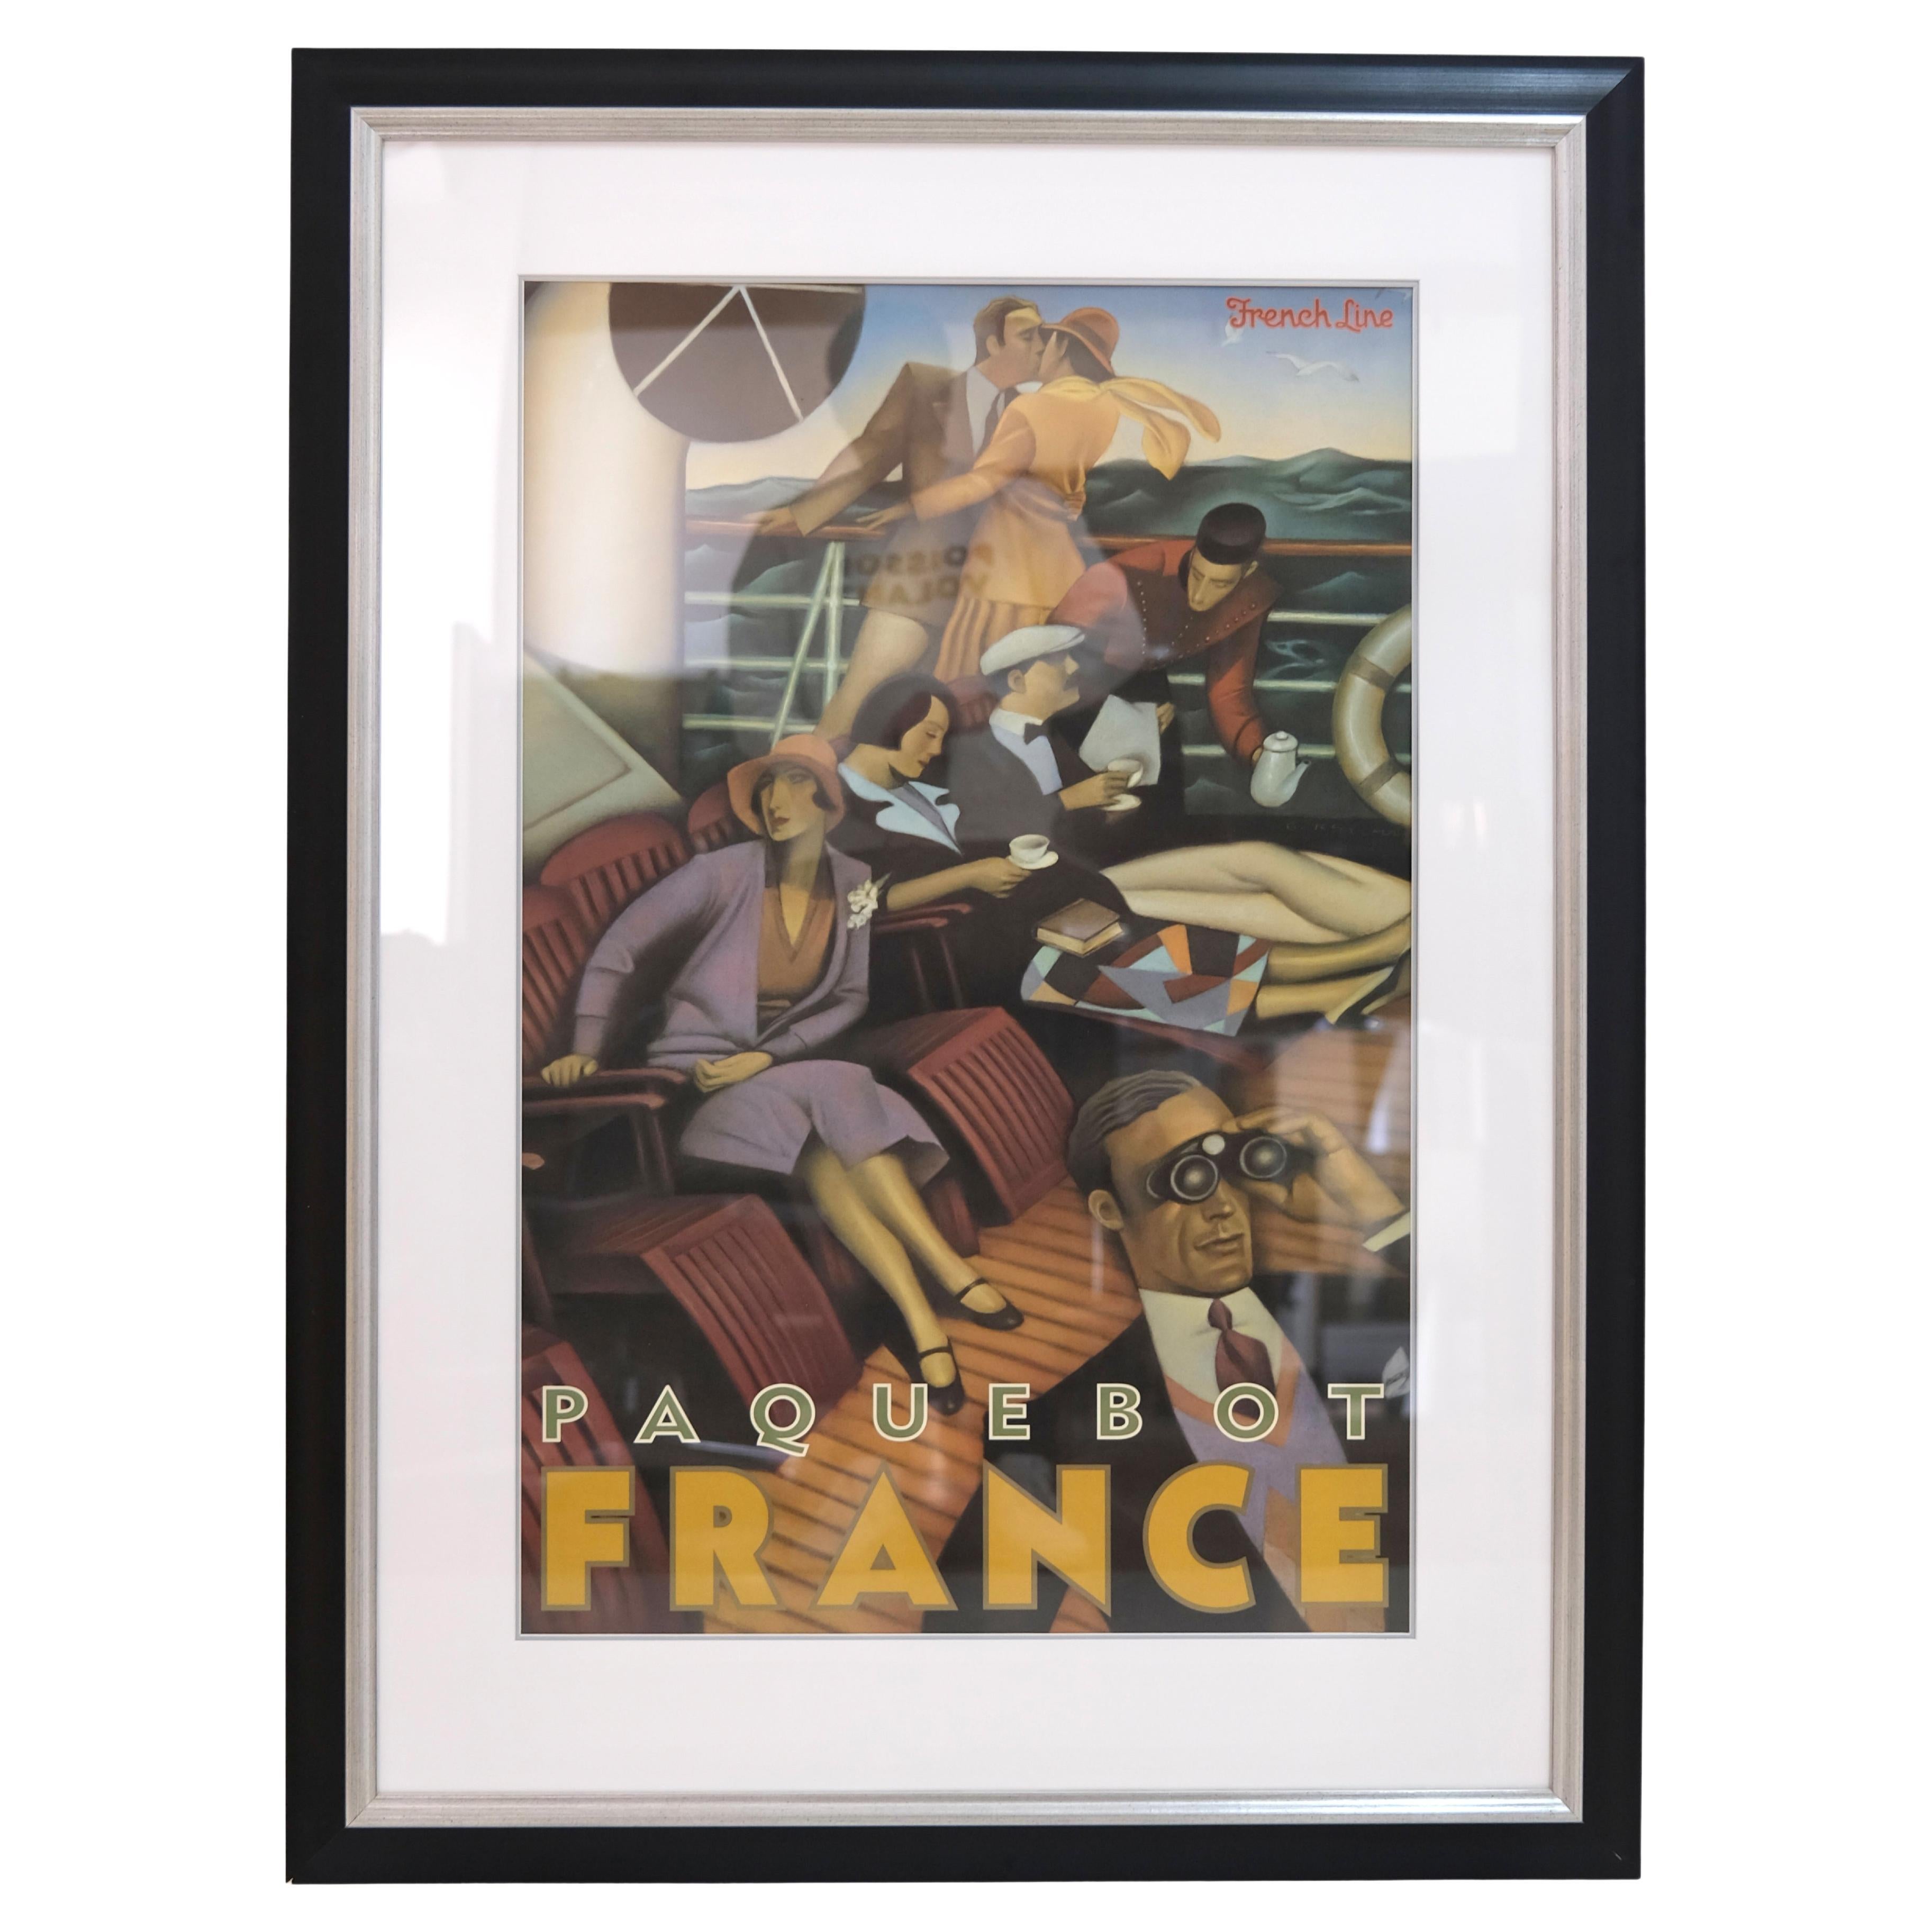 1960/70's Poster Paquebot France Promotion for the Transatlantic Liner France For Sale